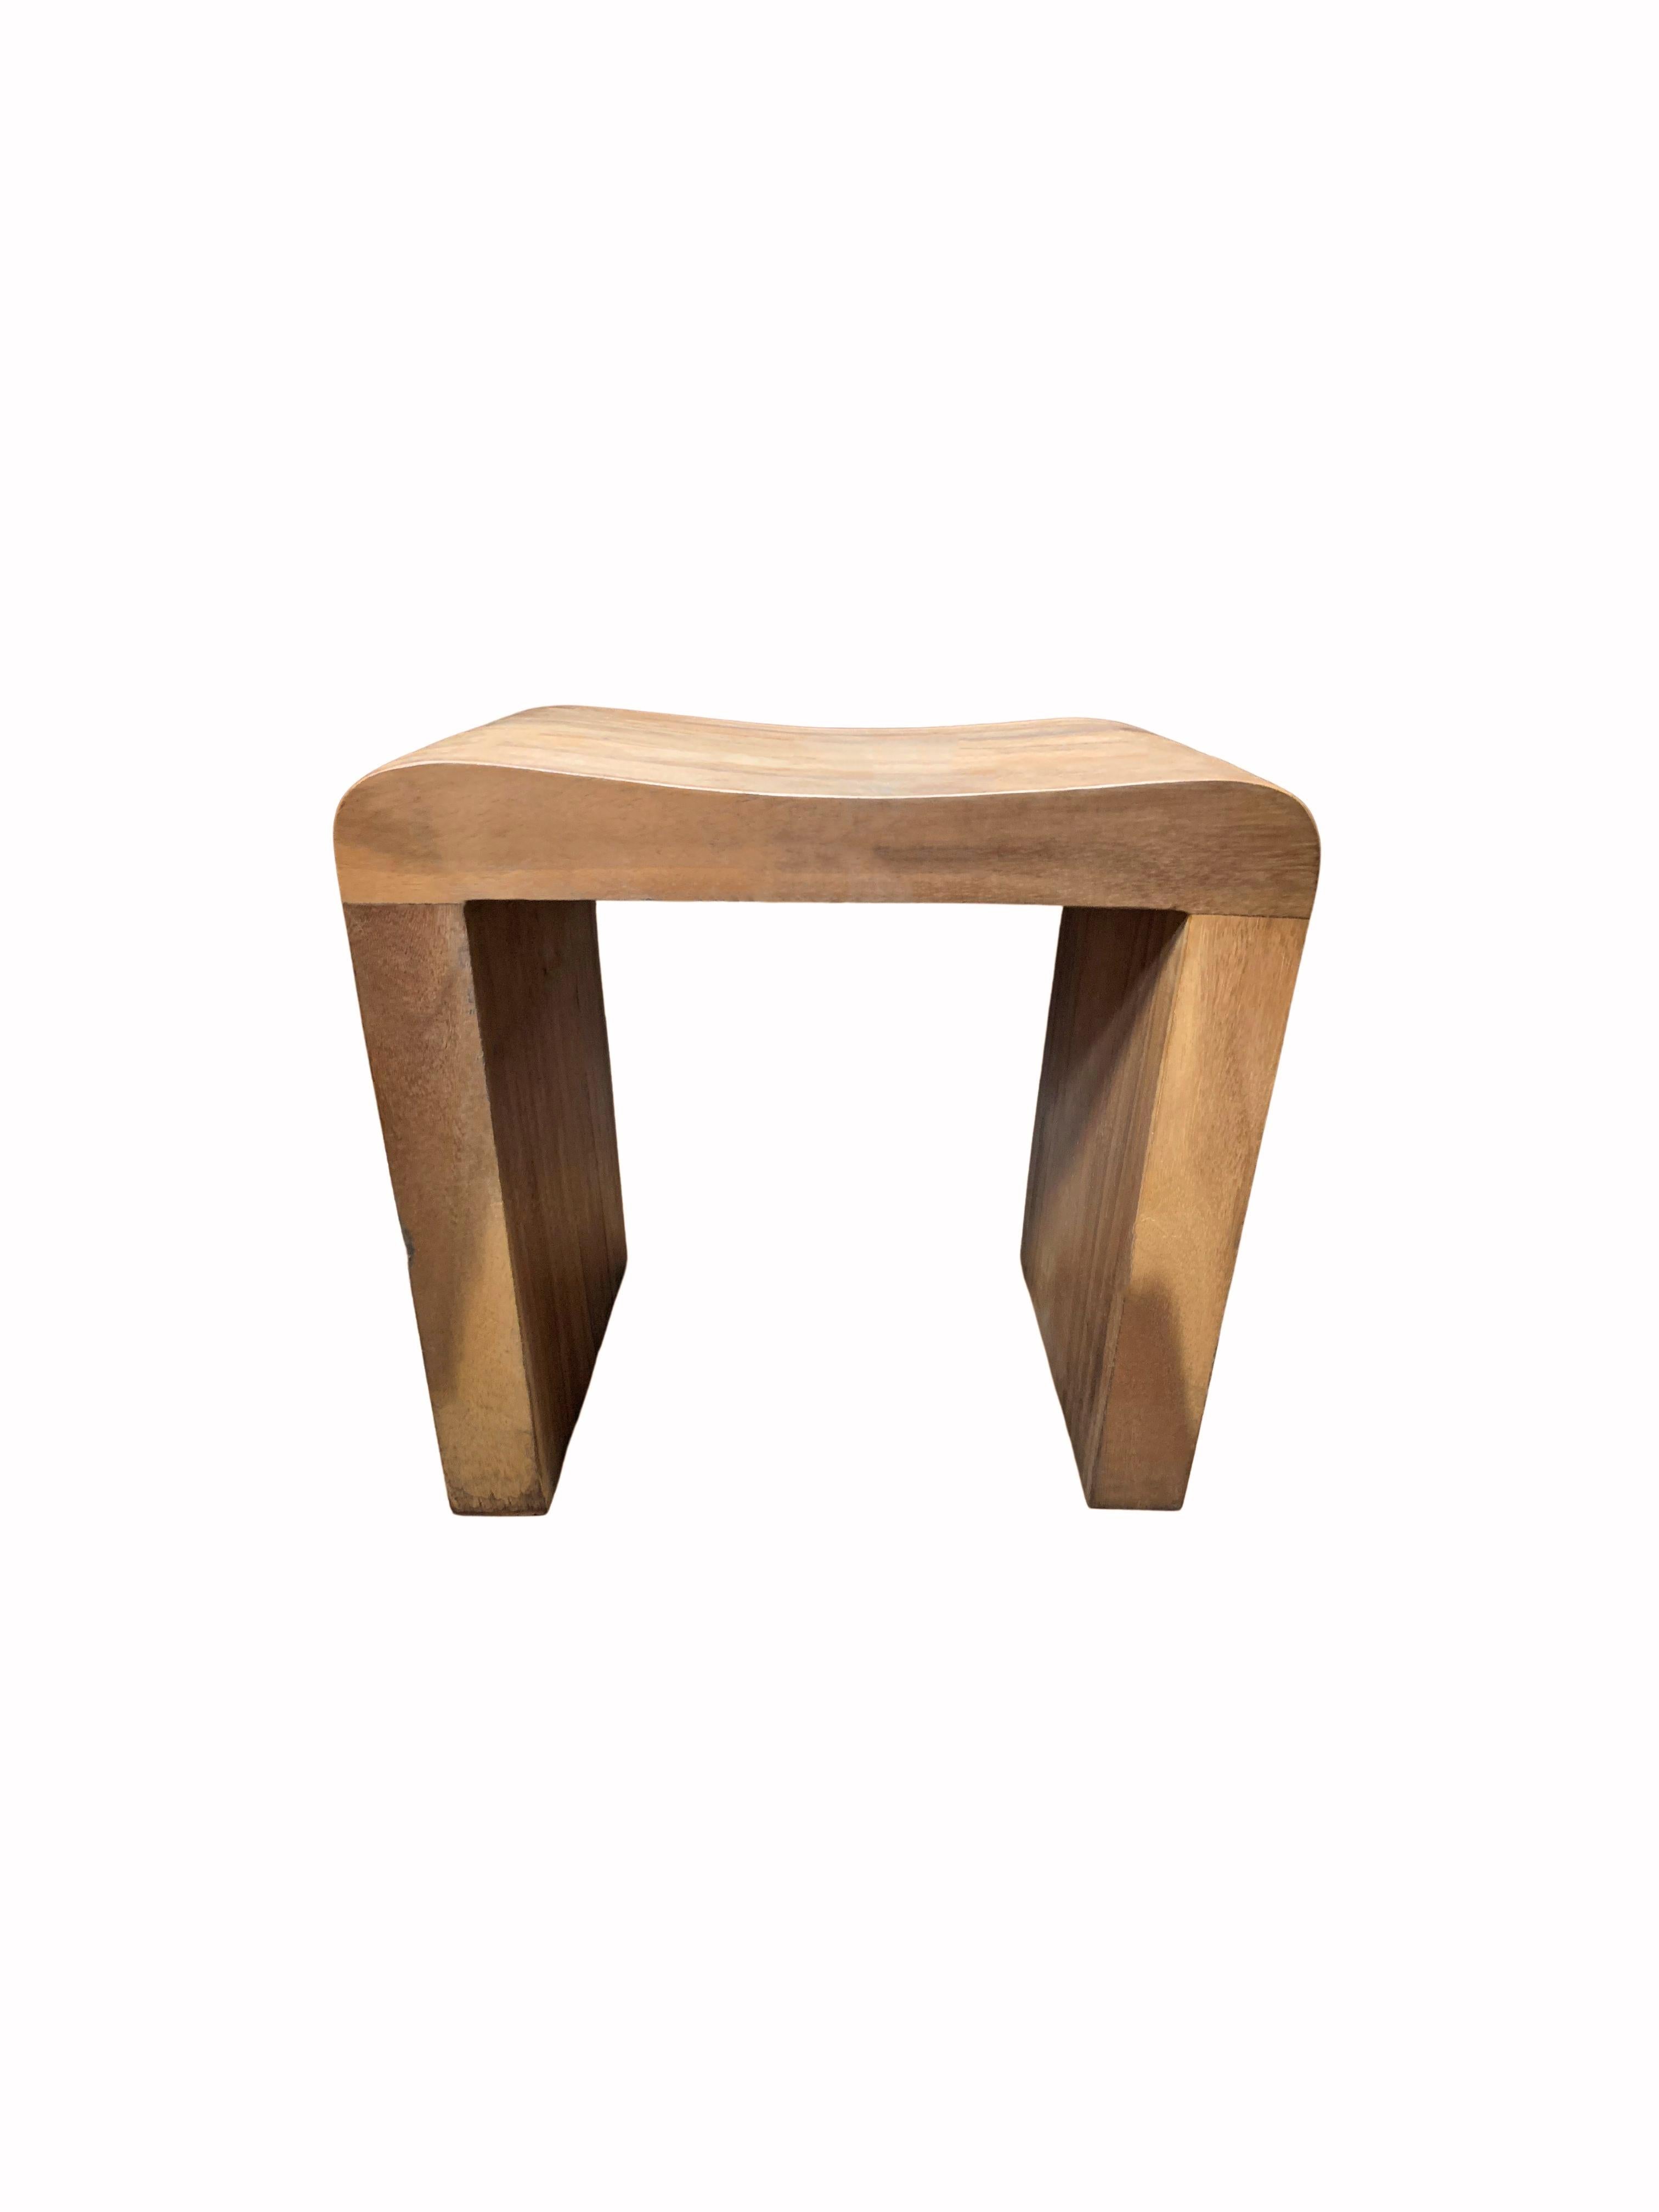 Ein wunderbar skulpturaler Hocker aus Teakholz mit einer geschwungenen Sitzfläche. Der Mix aus Holztexturen und -tönen trägt zu seinem Charme bei. Durch seine neutrale Farbe und seine minimalistische Form passt er in jeden Raum.